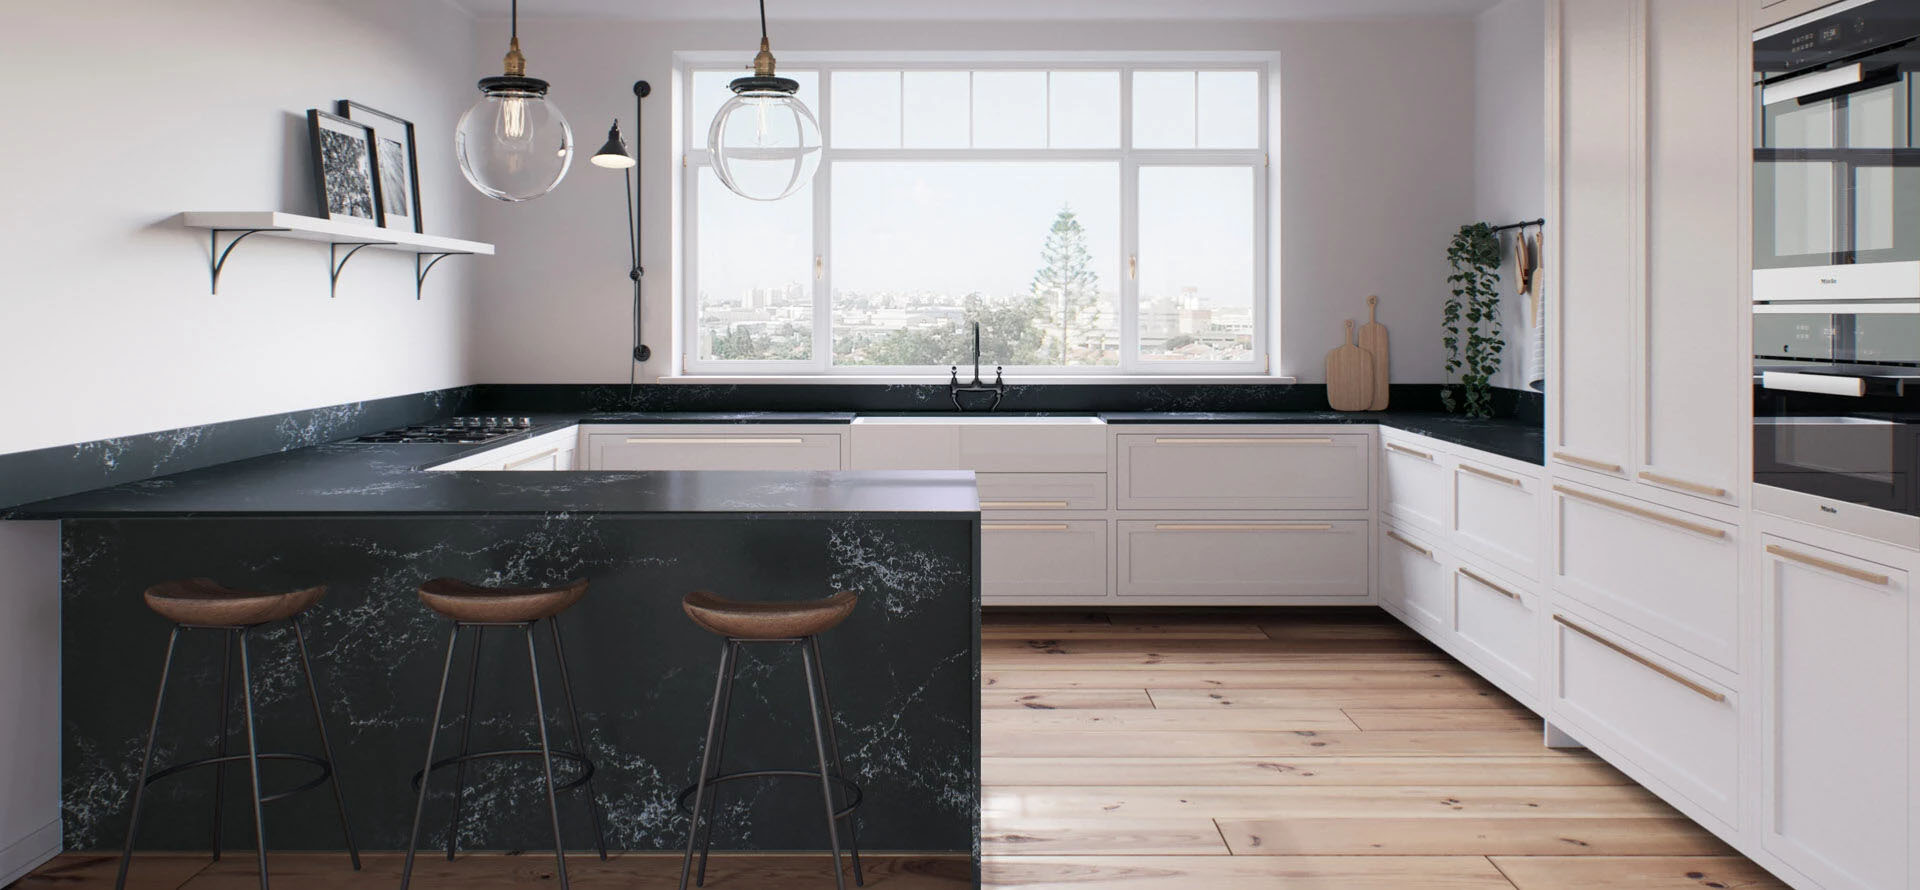 platinum jubilee special offer Caesarstone empira black kitchen worktops